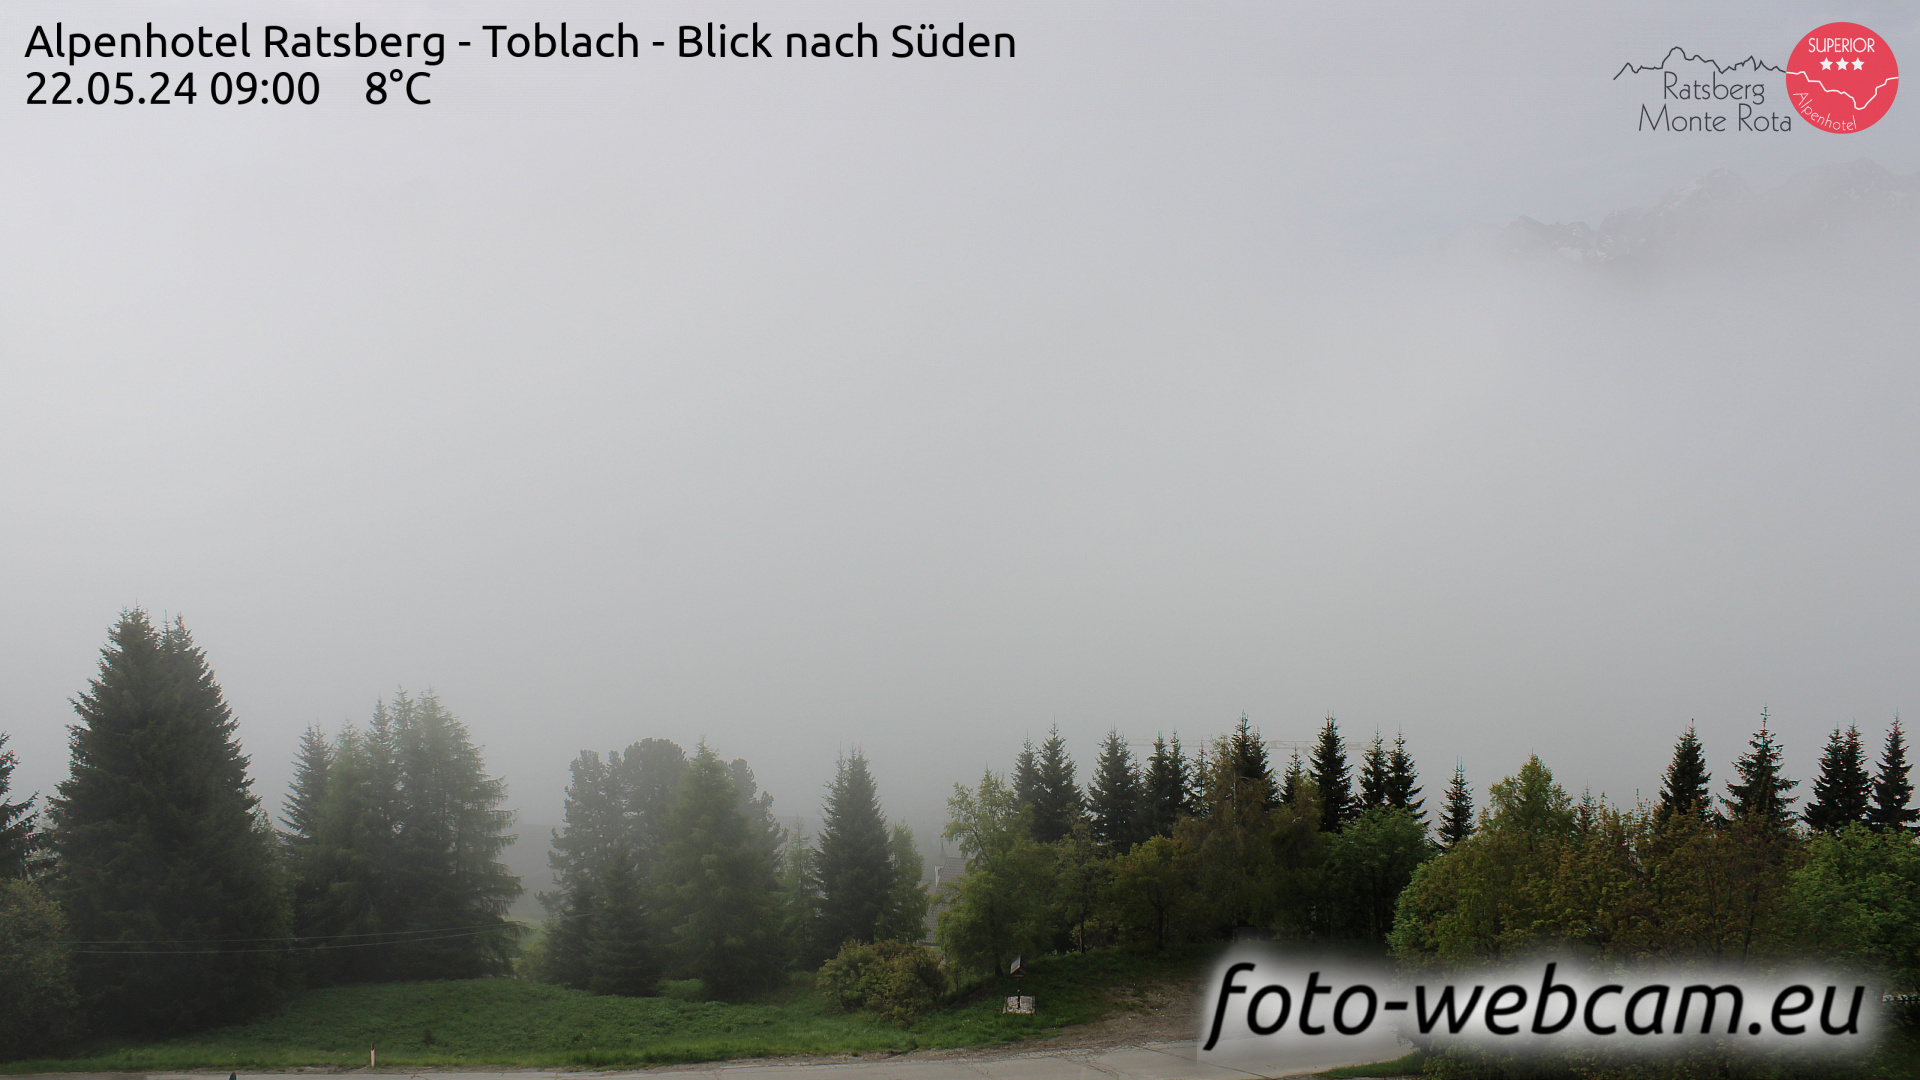 Toblach (Dolomitterne) Man. 09:03